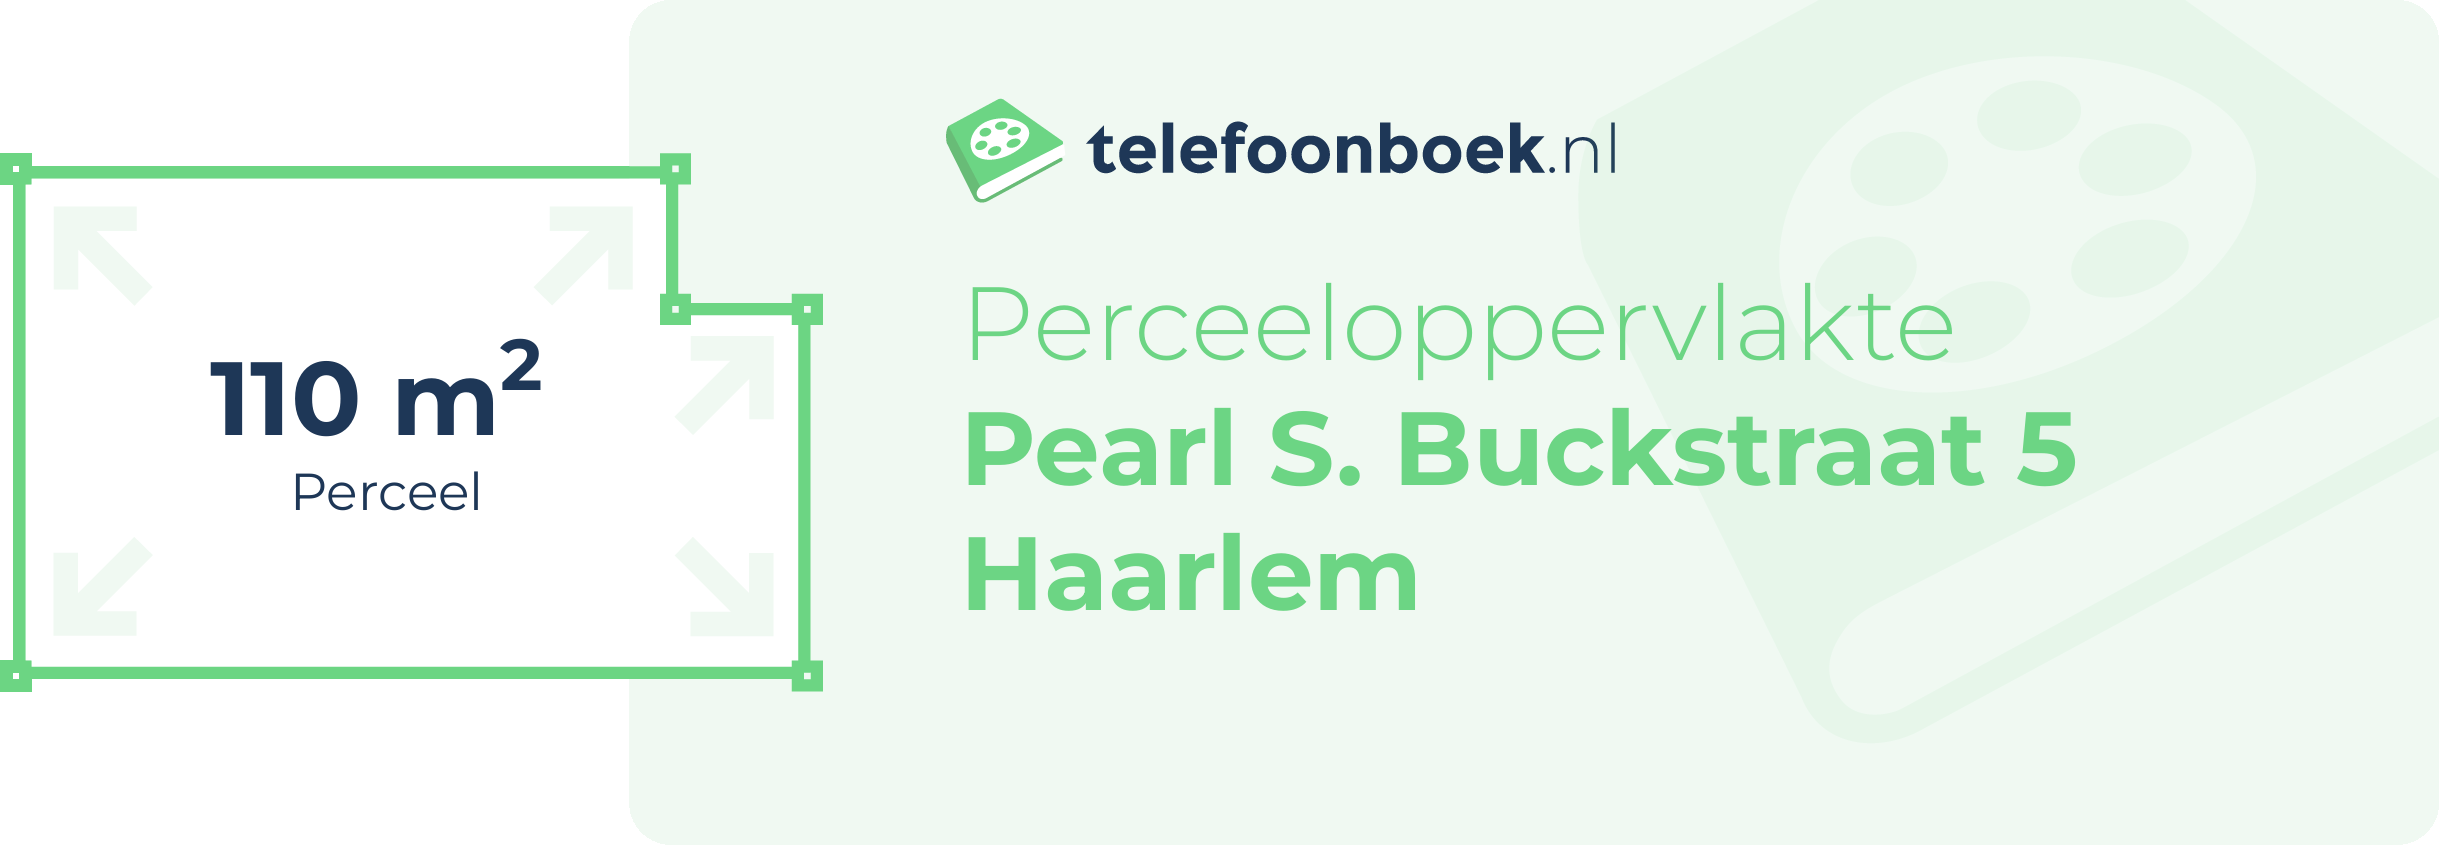 Perceeloppervlakte Pearl S. Buckstraat 5 Haarlem